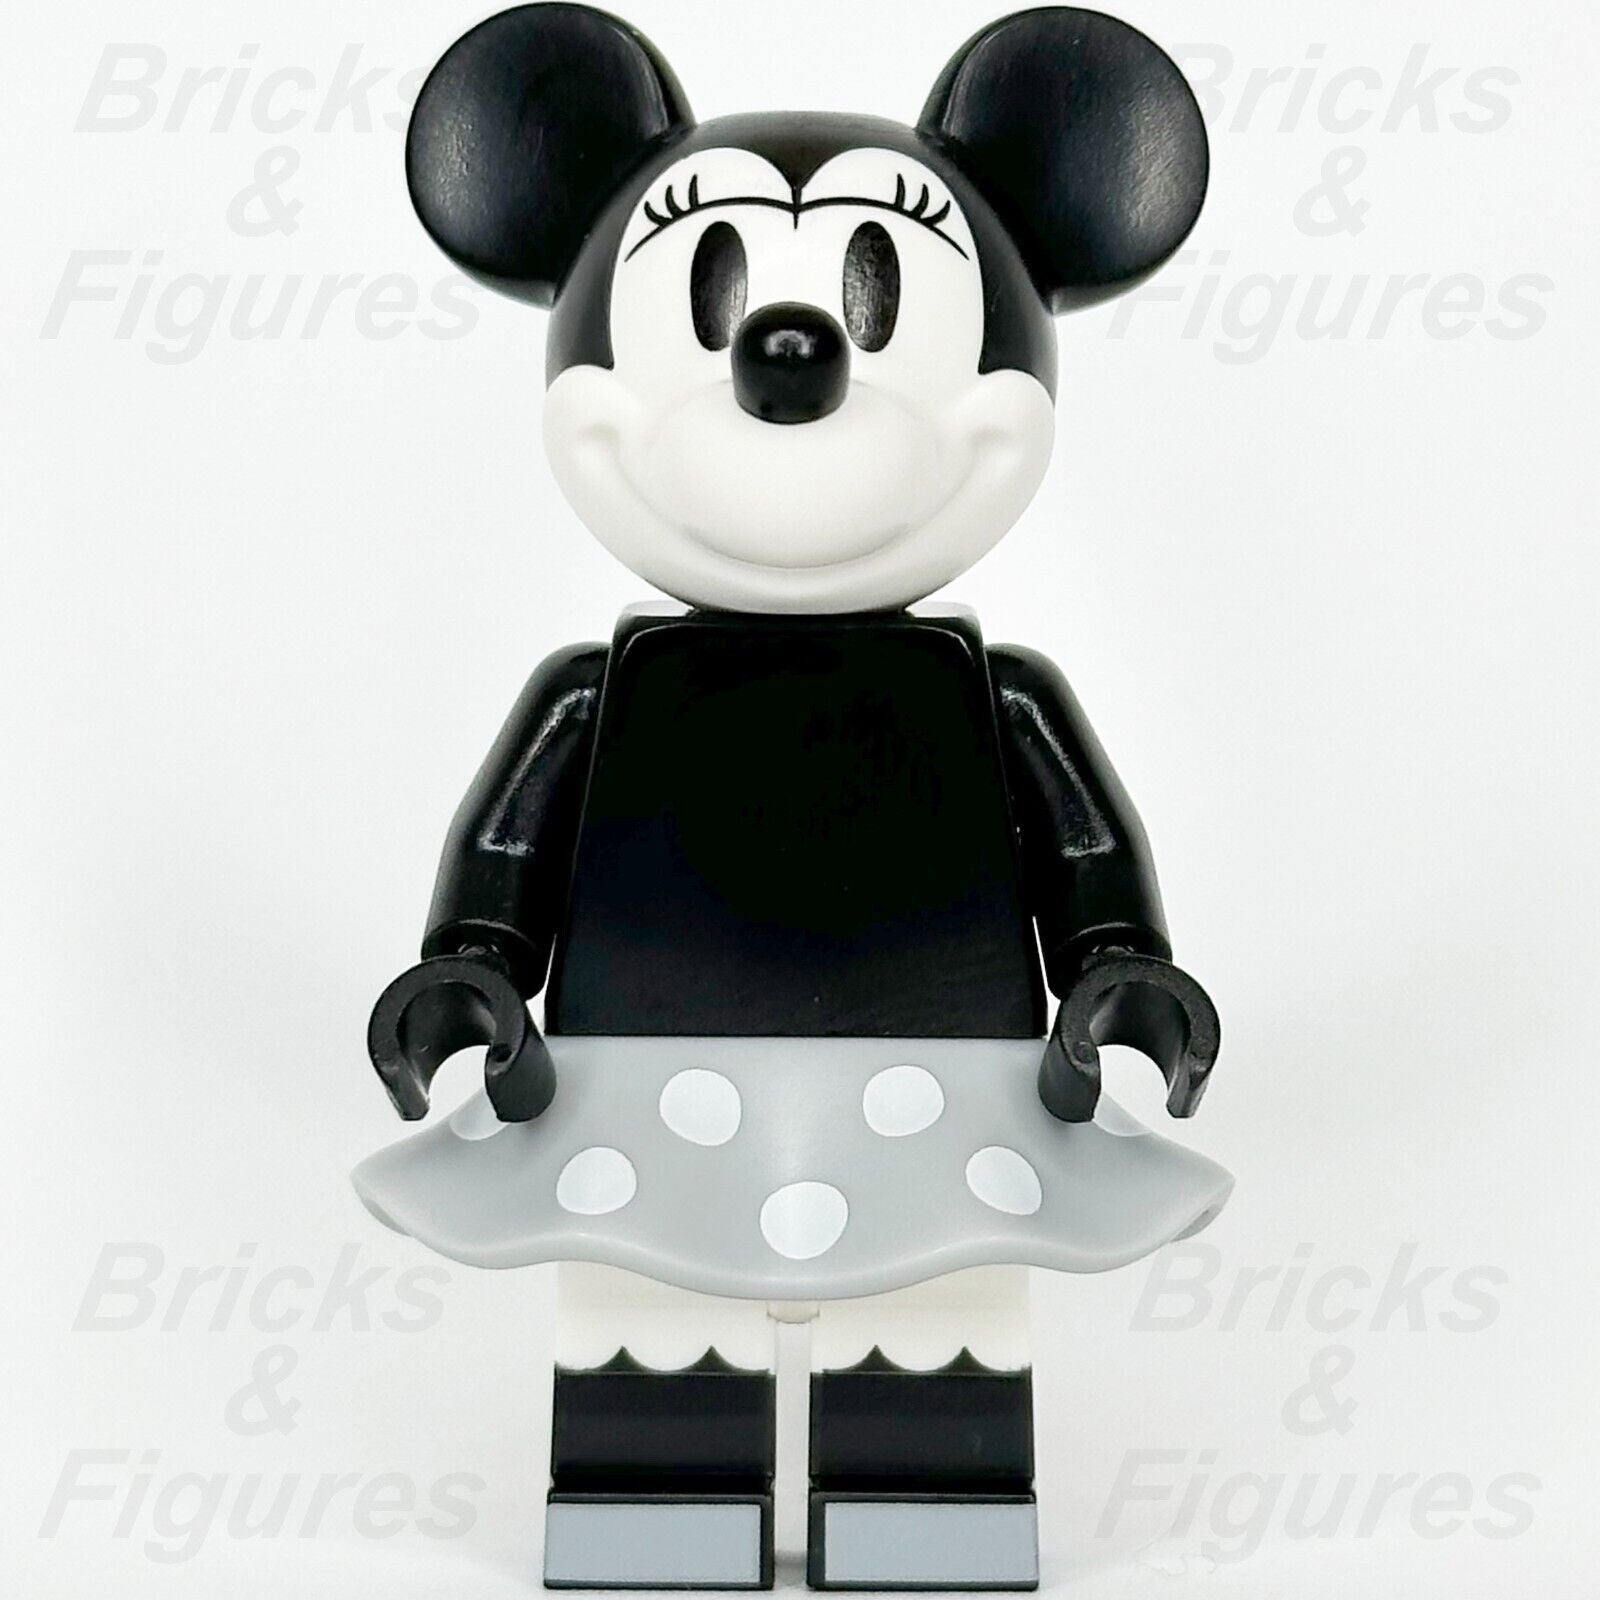 LEGO Disney Minnie Mouse Minifigure Vintage Black & White Classic 43230 dis142